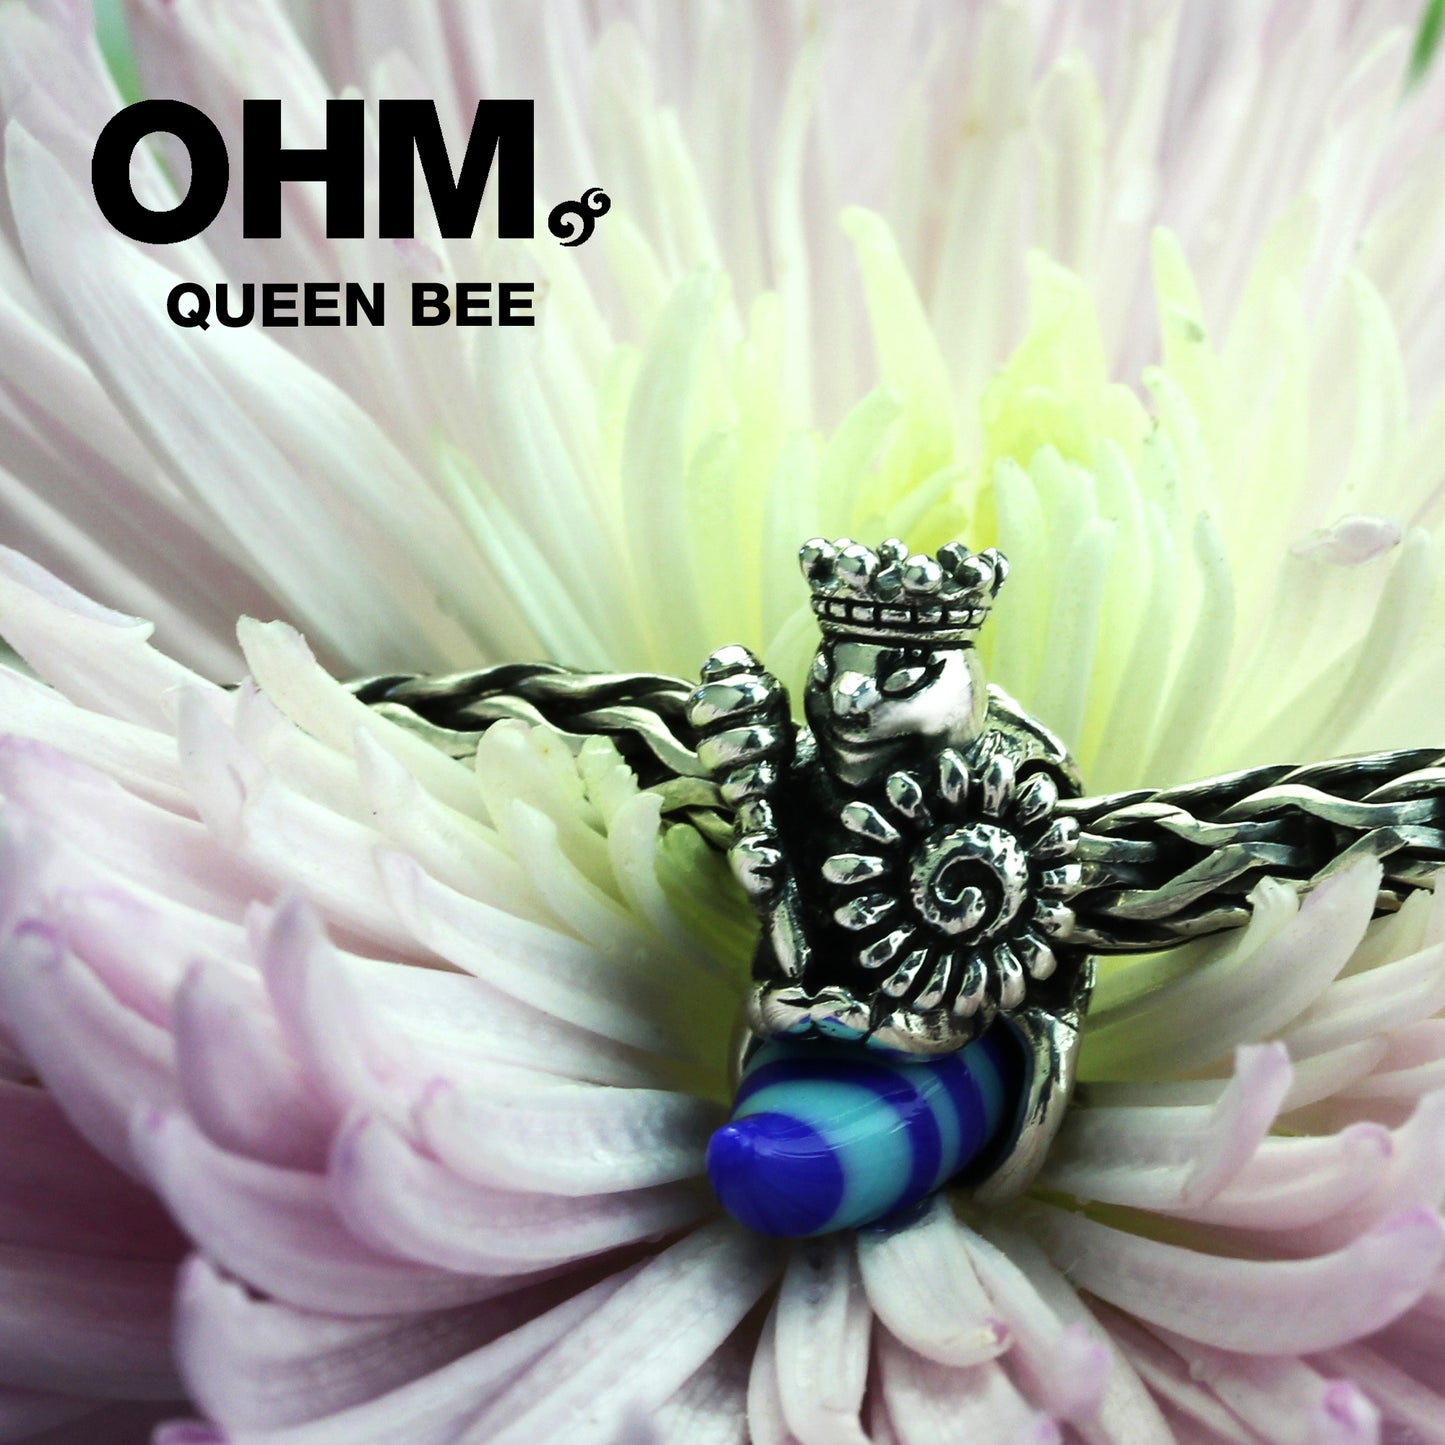 Queen Bee (Retired)